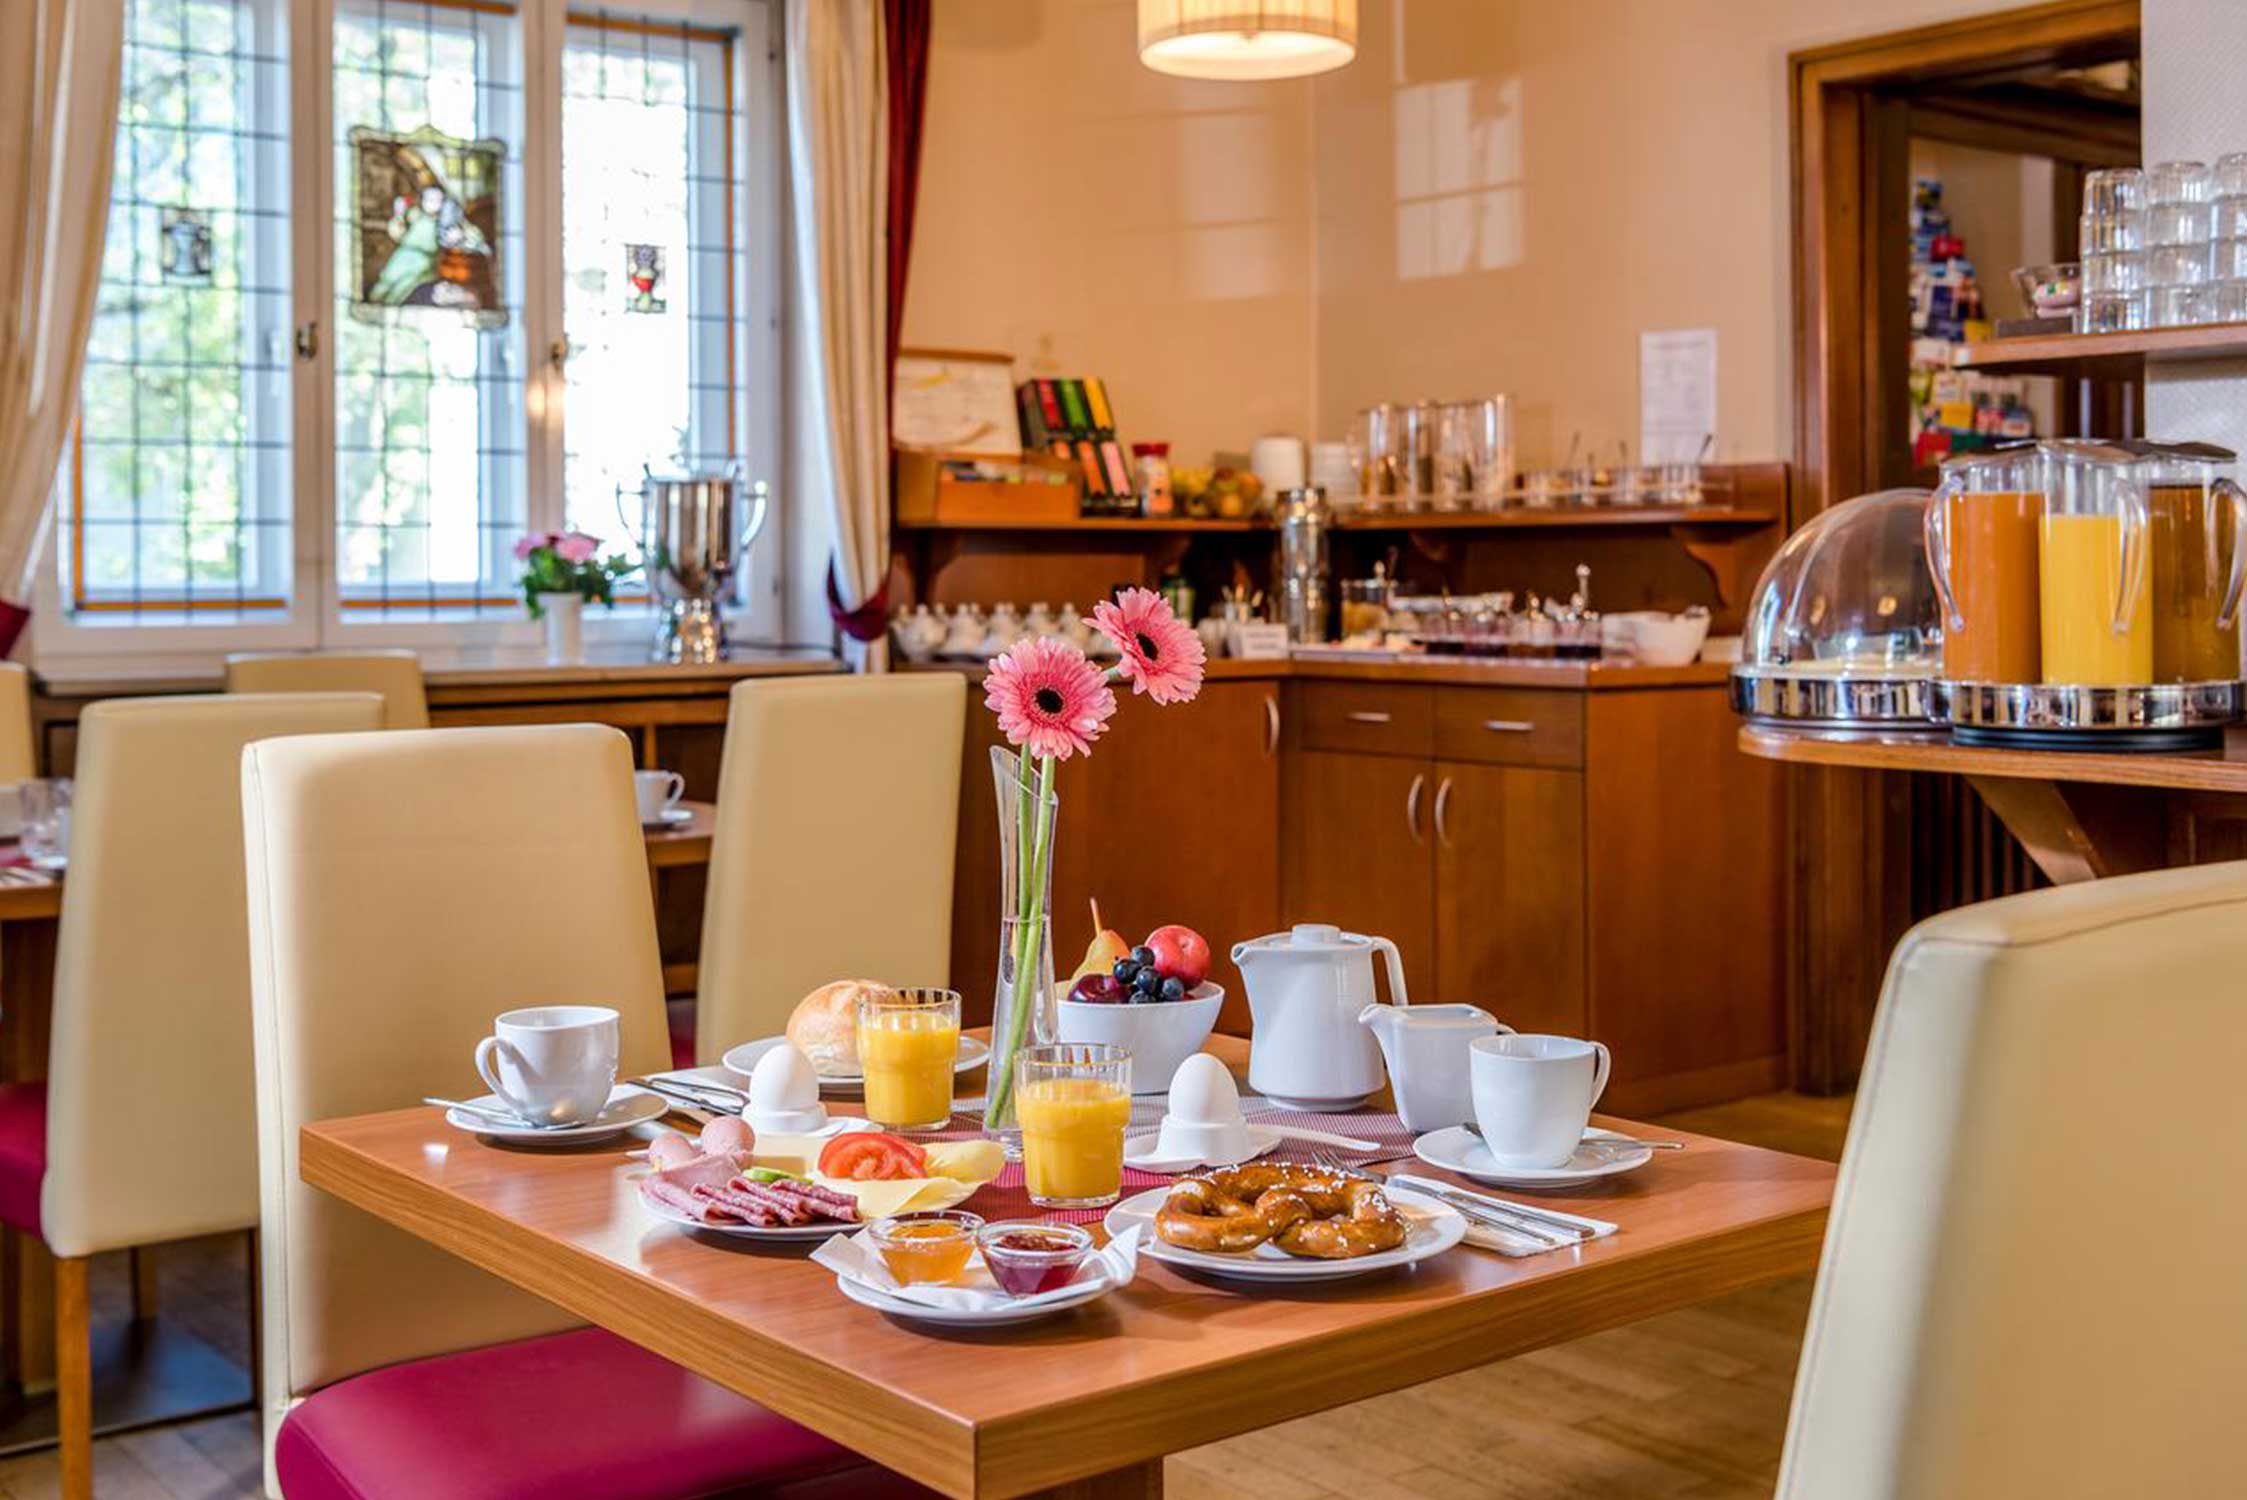 Hotel Laimer Hof, laid breakfast table